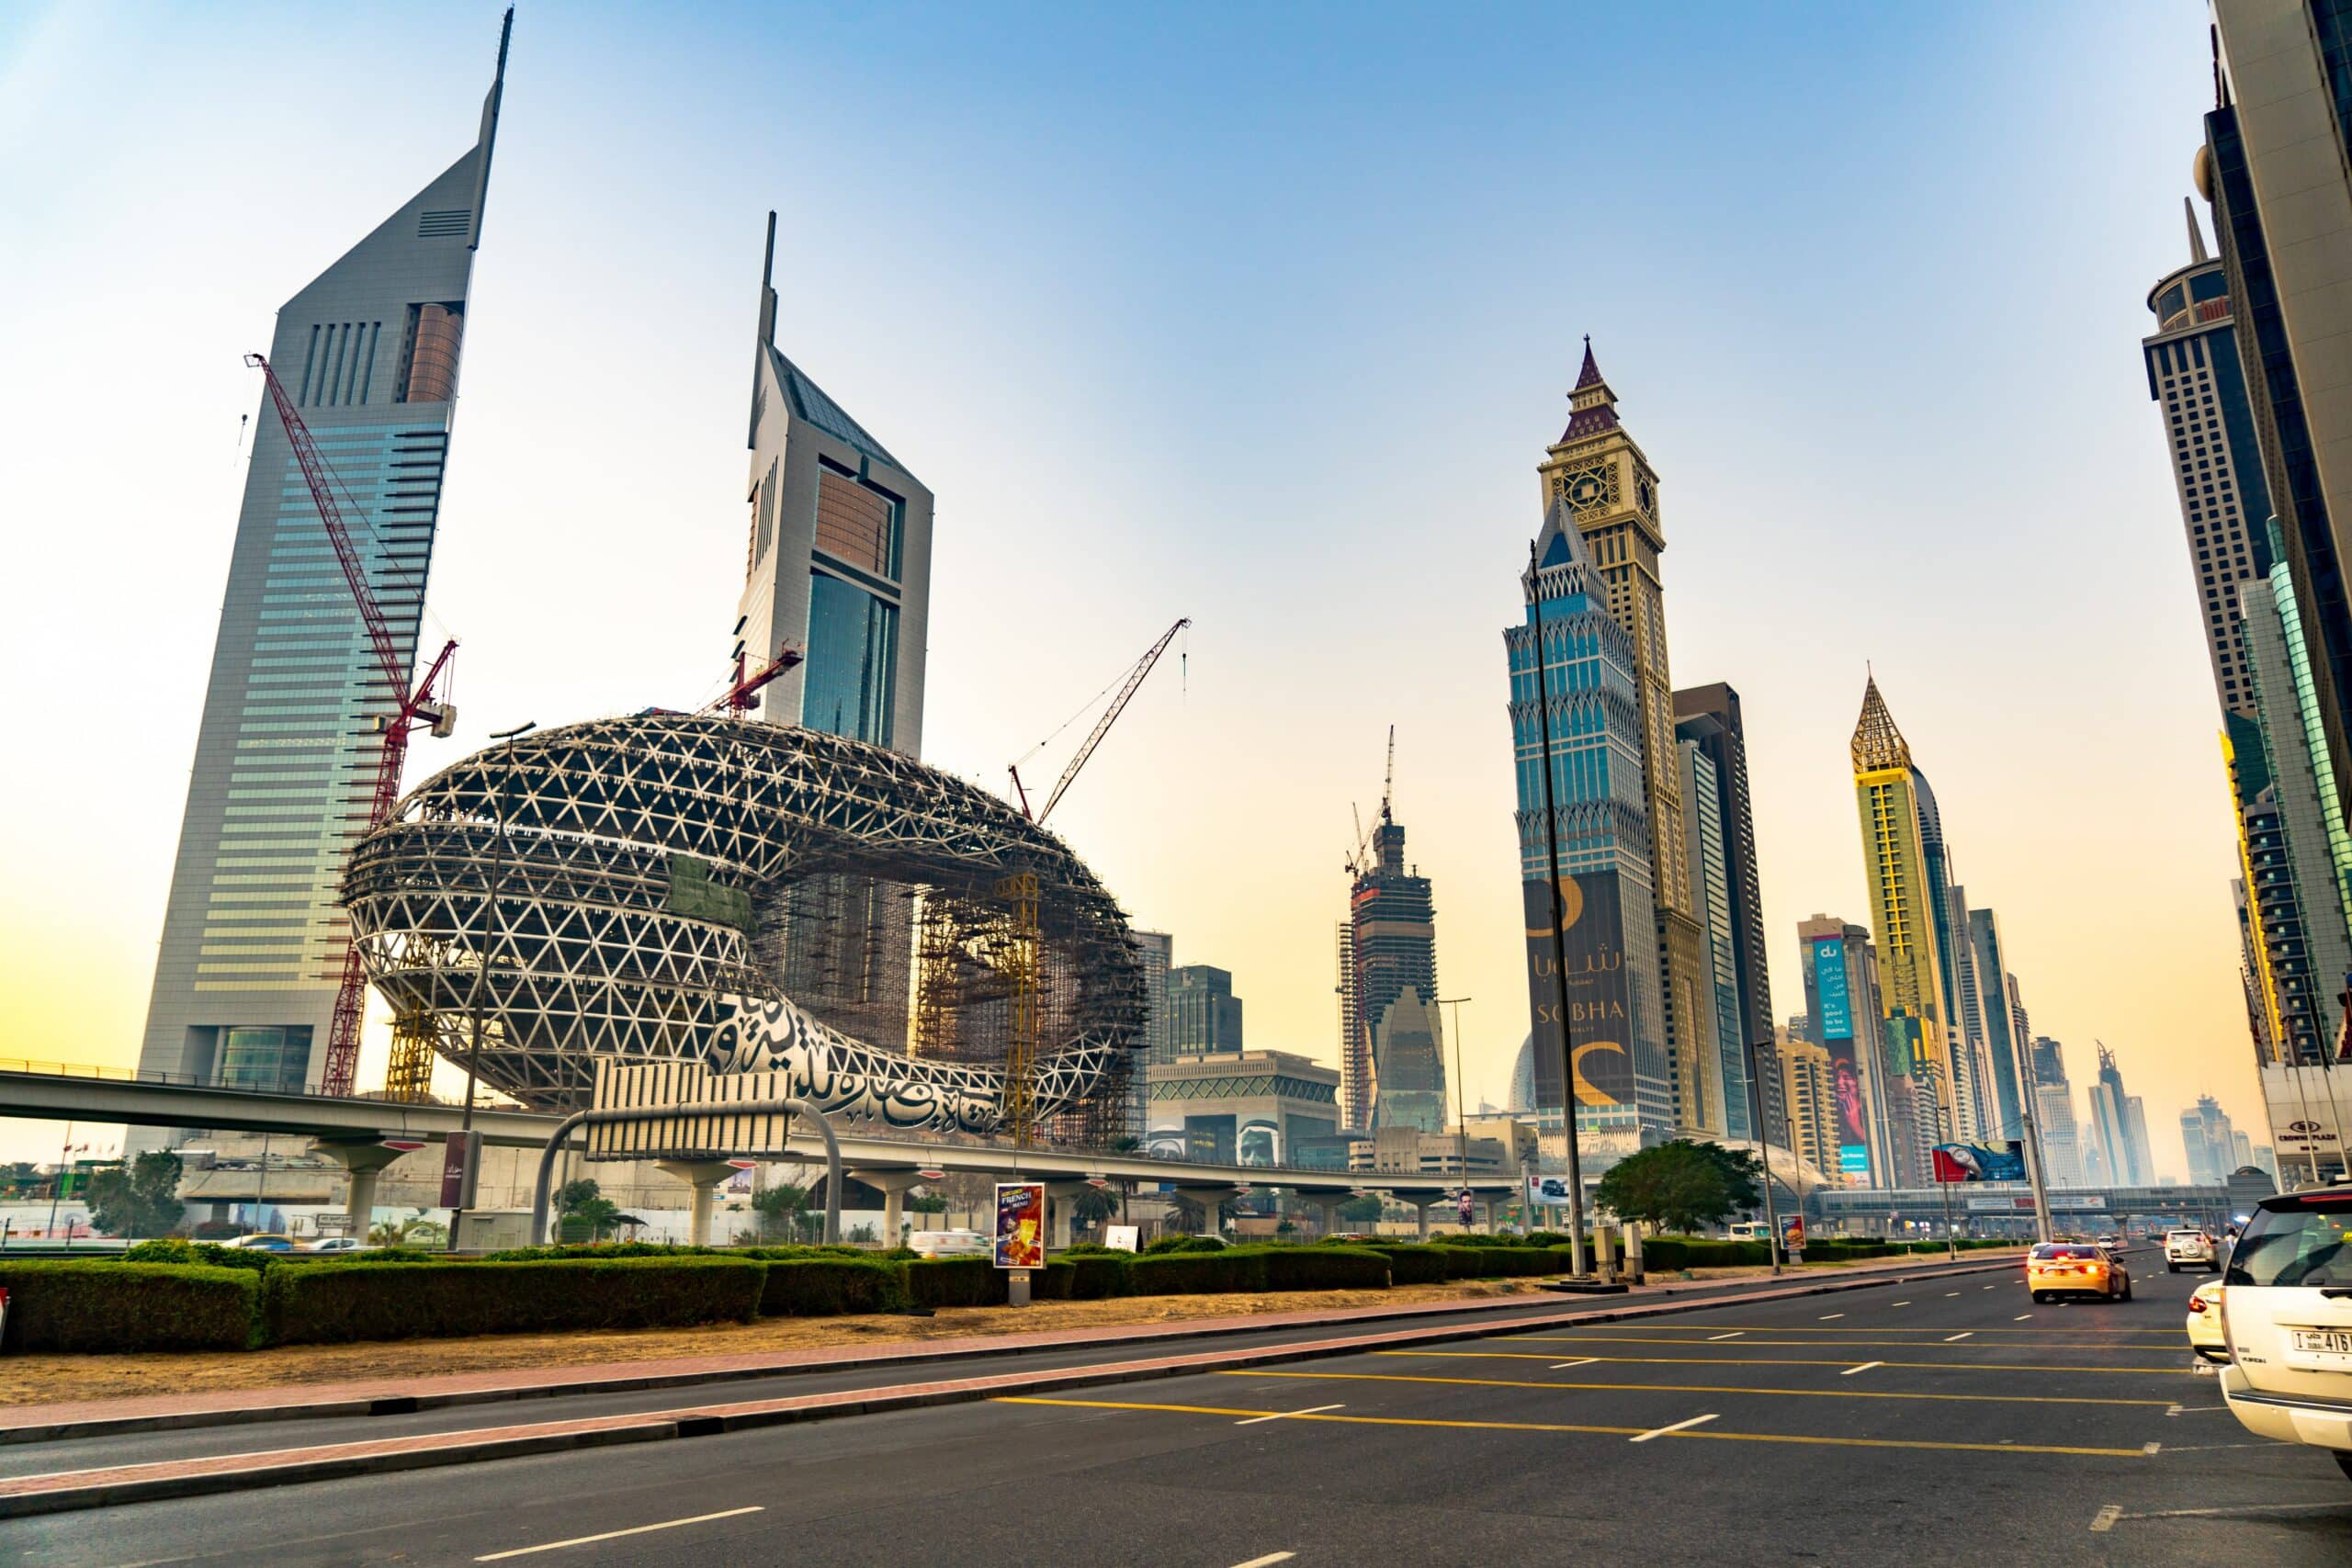 Vista da Avenida da Sheikh Zayed, Dubai, Emirados Árabes com enormes prédios ao fundo.